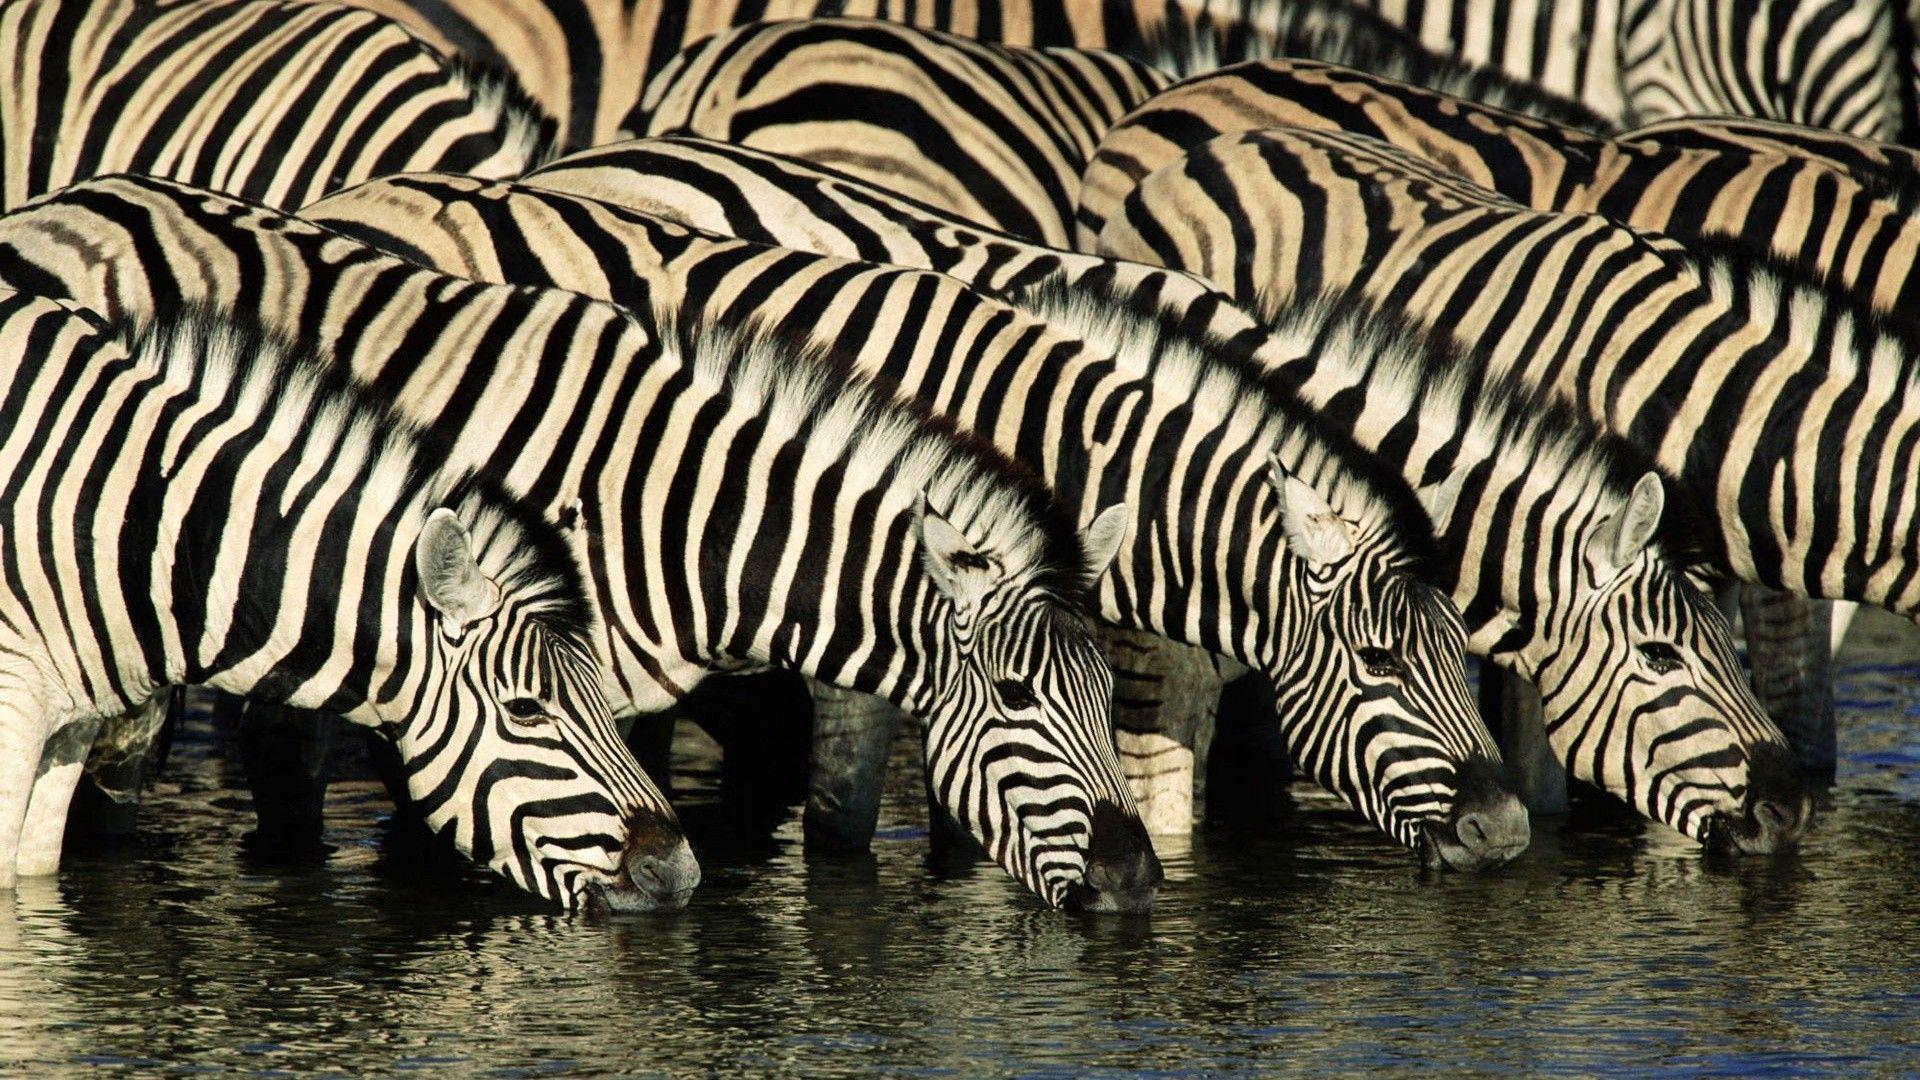 Zebra Wallpaper, Picture, Image